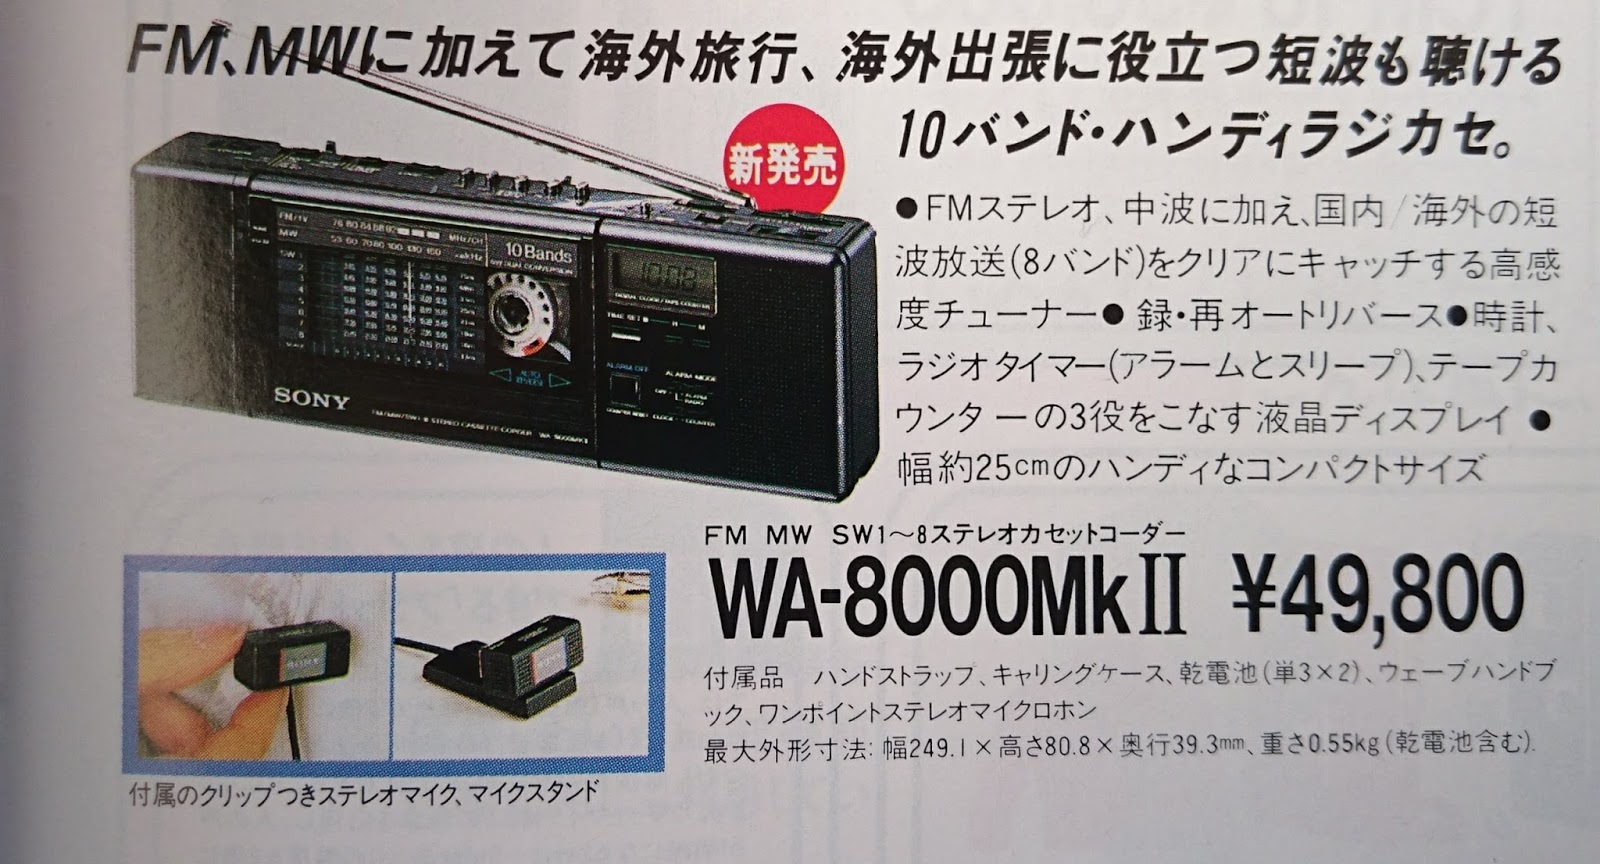 オーディオ機器 ラジオ コズミログ: 昭和62年に発売されたソニーのステレオラジカセ